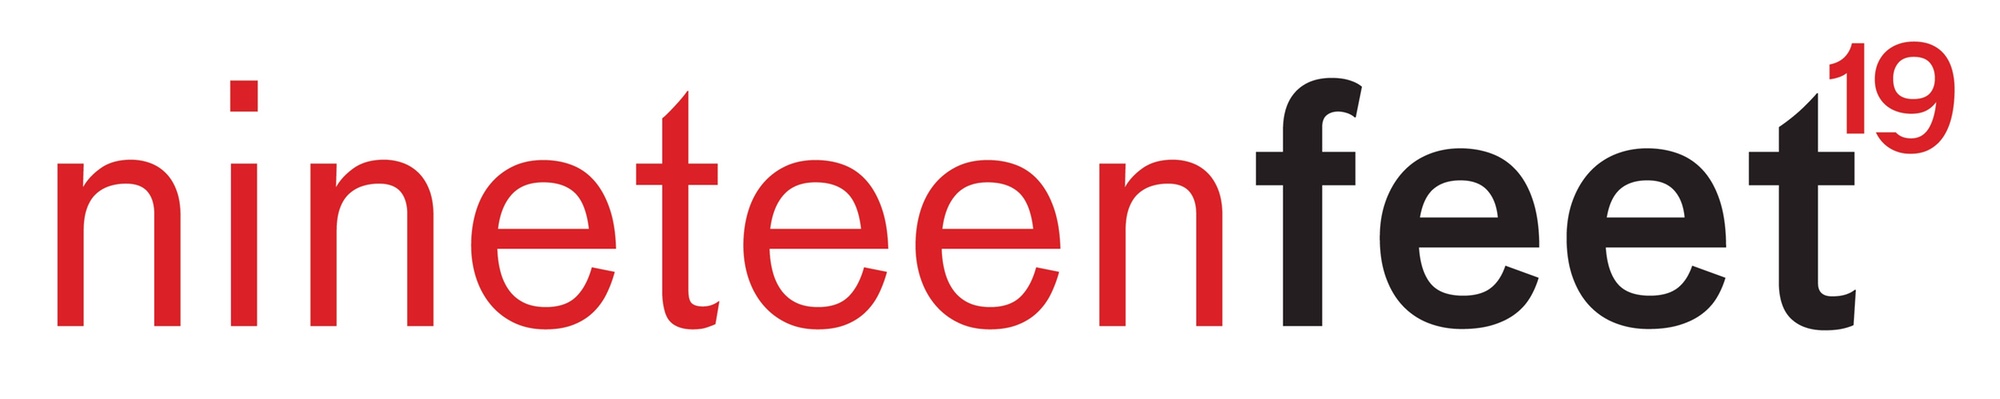 Nineteen Feet logo